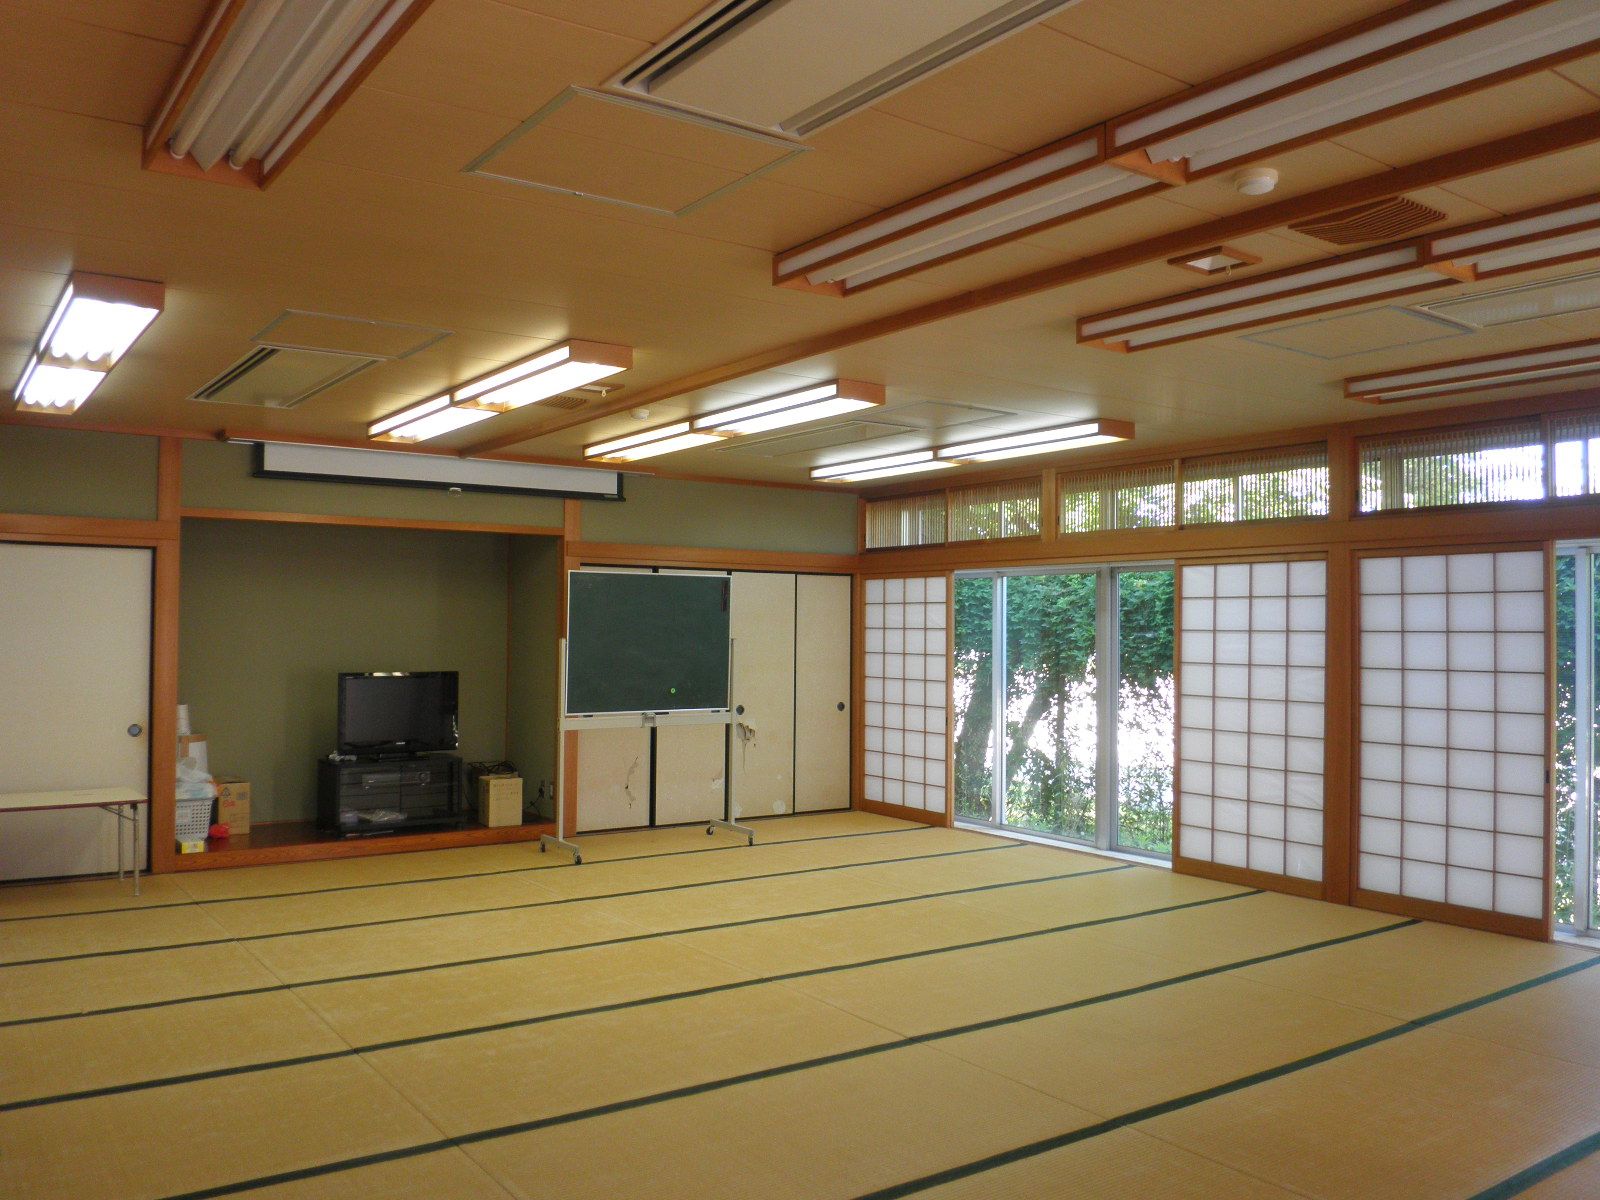 畳の敷かれた和室で、右側の障子が開けられ窓ガラスから明るい光が差し込んでいる講習室の写真